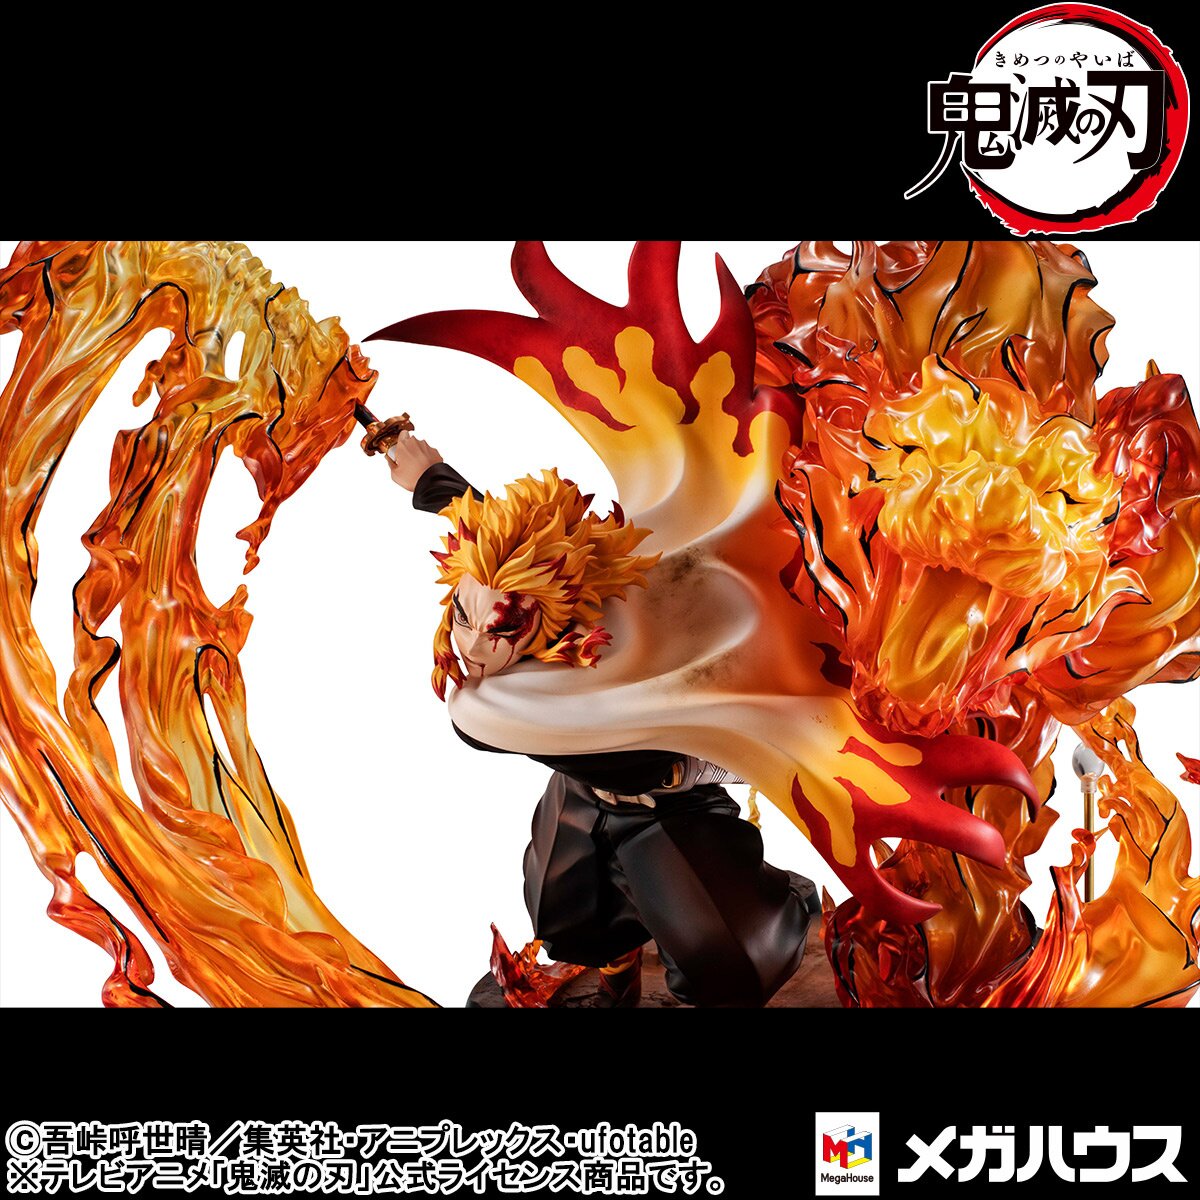 Demon slayer: Kimetsu no Yaiba Kyojuro Precious G.E.M. Series 1/8